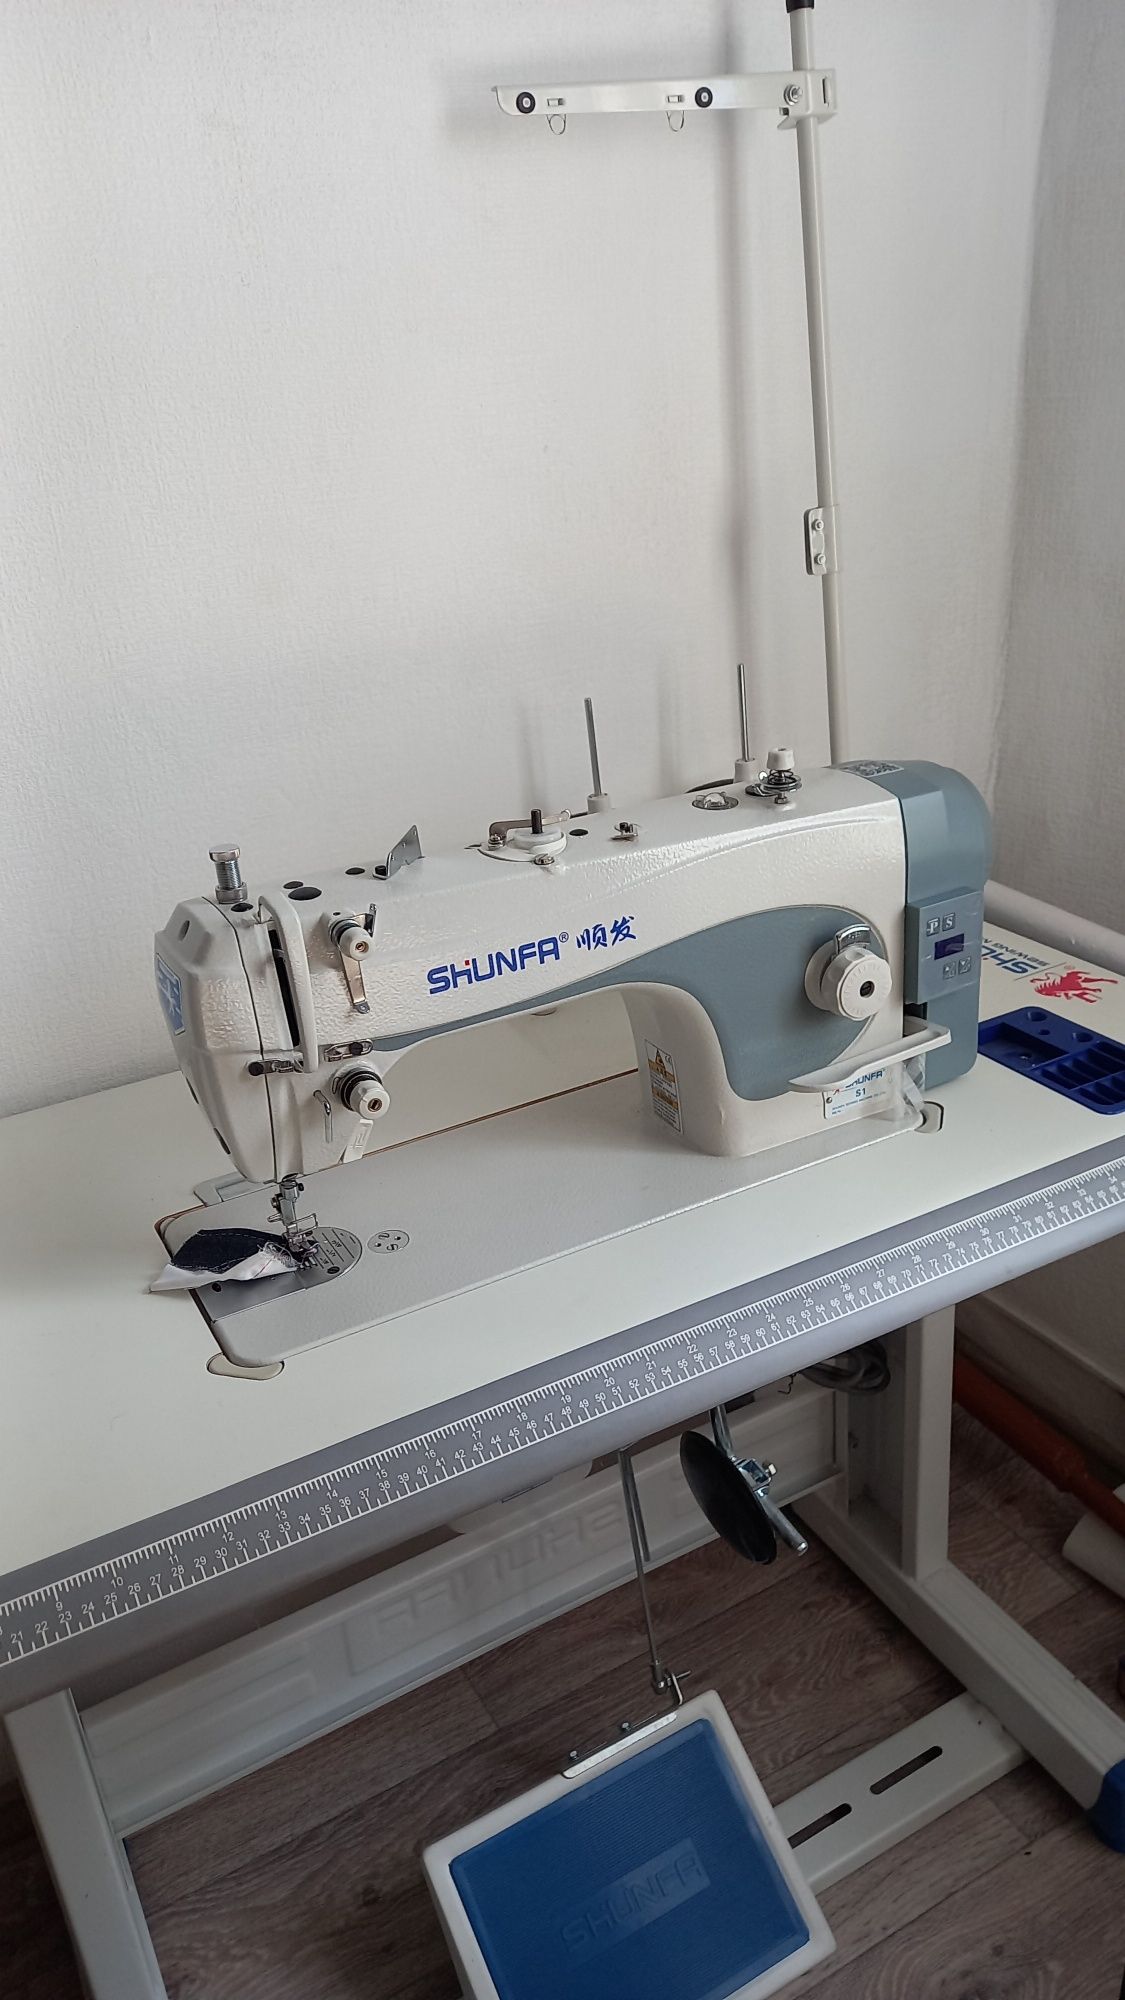 Продается промышленная швейная машина Shunfa S1 . Новая